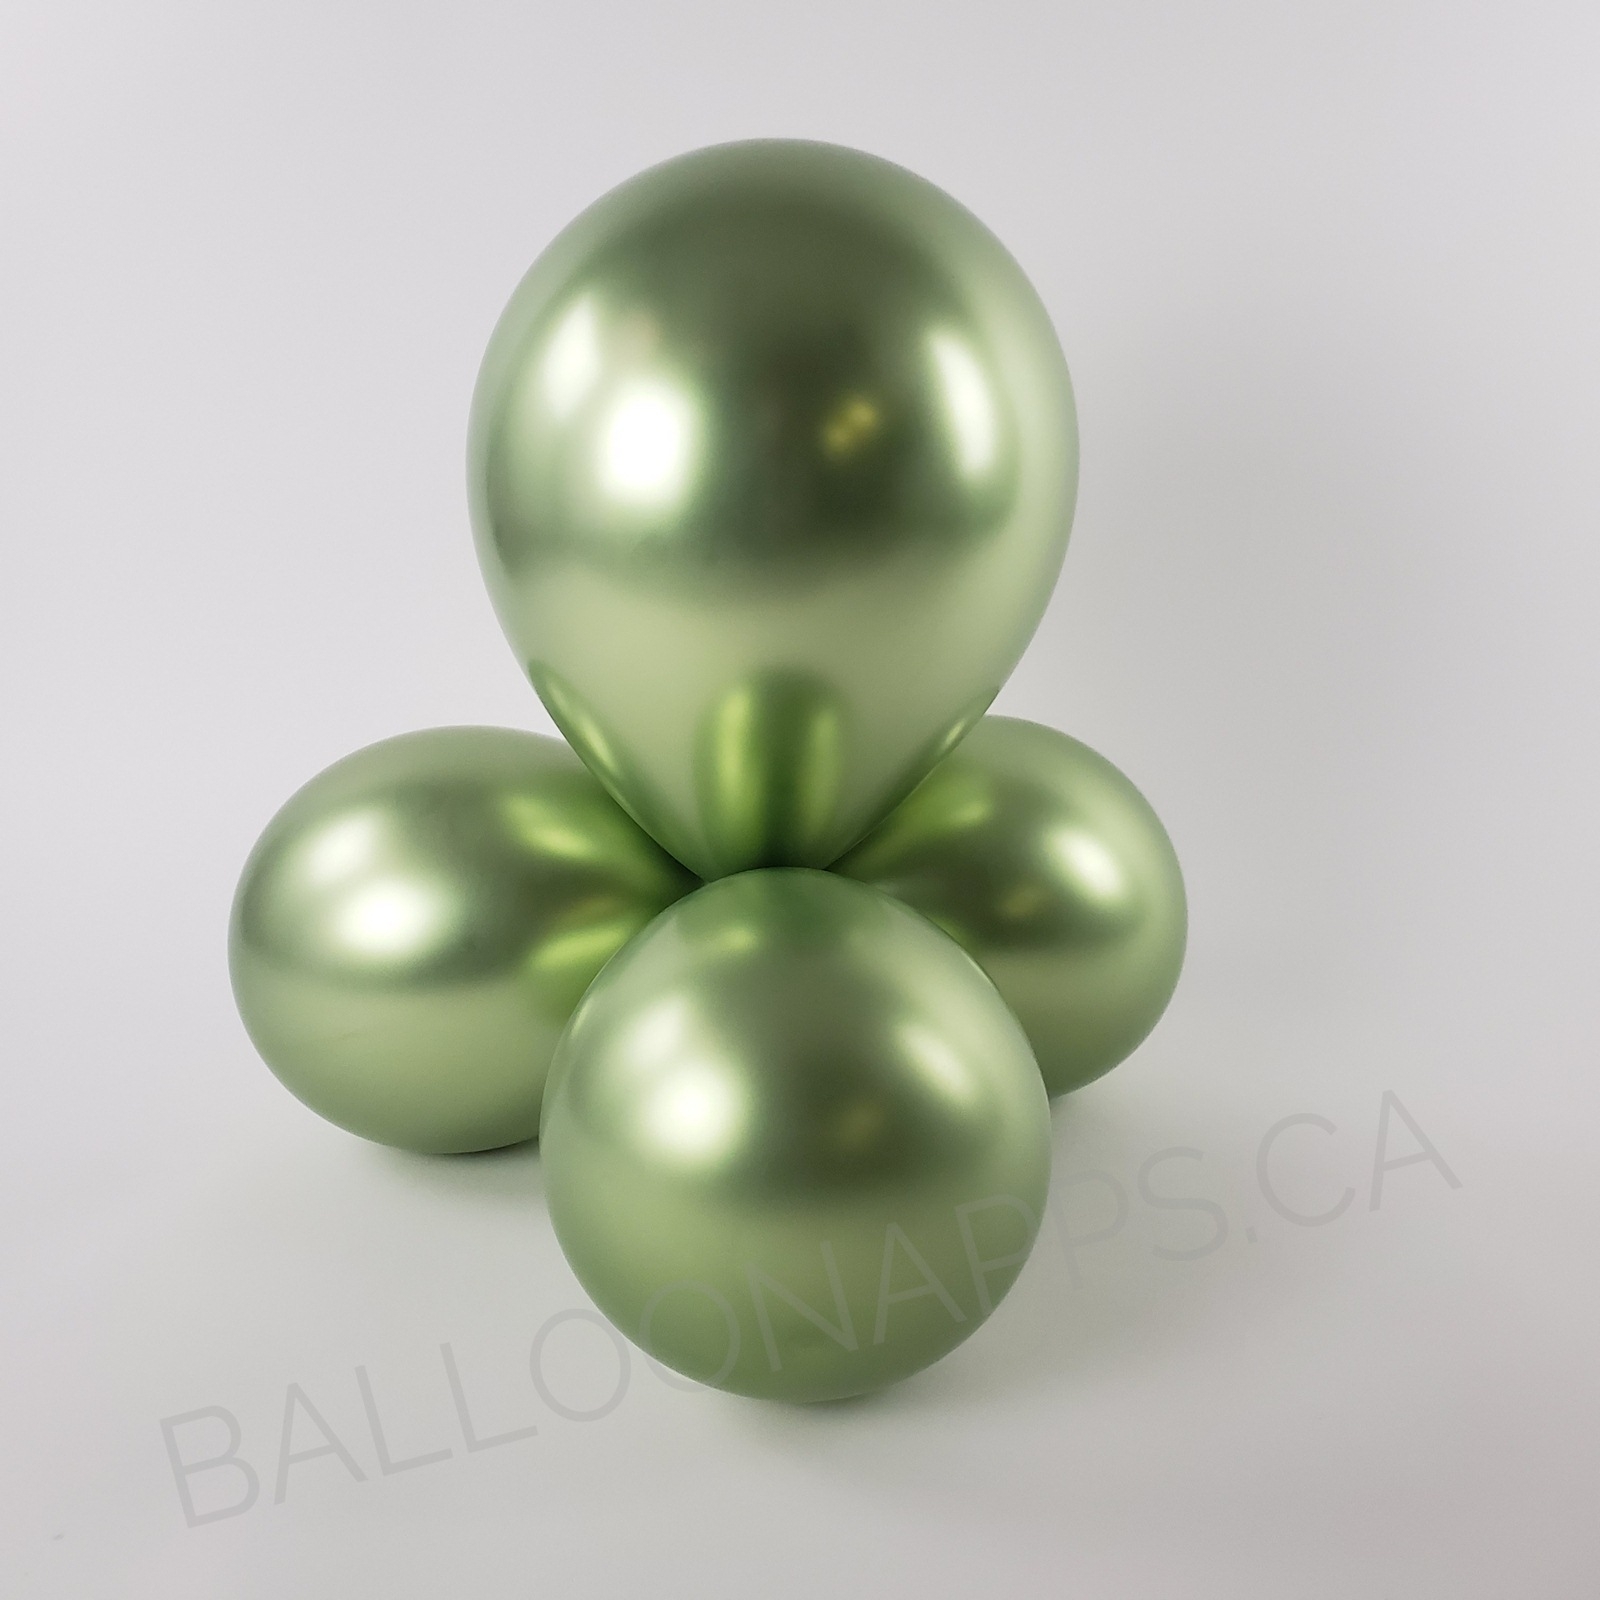 balloon texture Sempertex 260 Reflex Key Lime